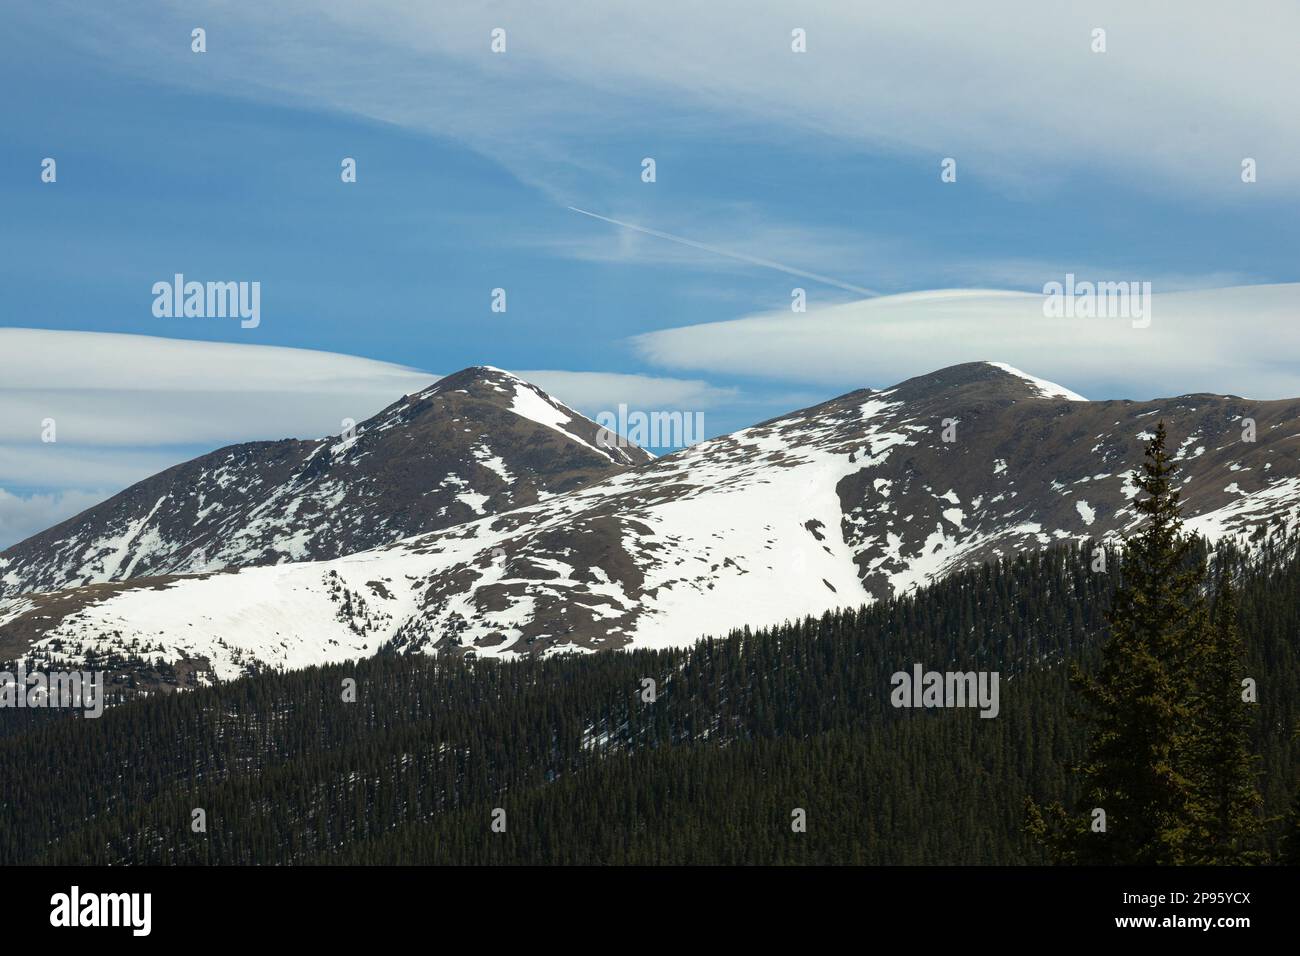 Snowy Mountain top in Colorado Stock Photo